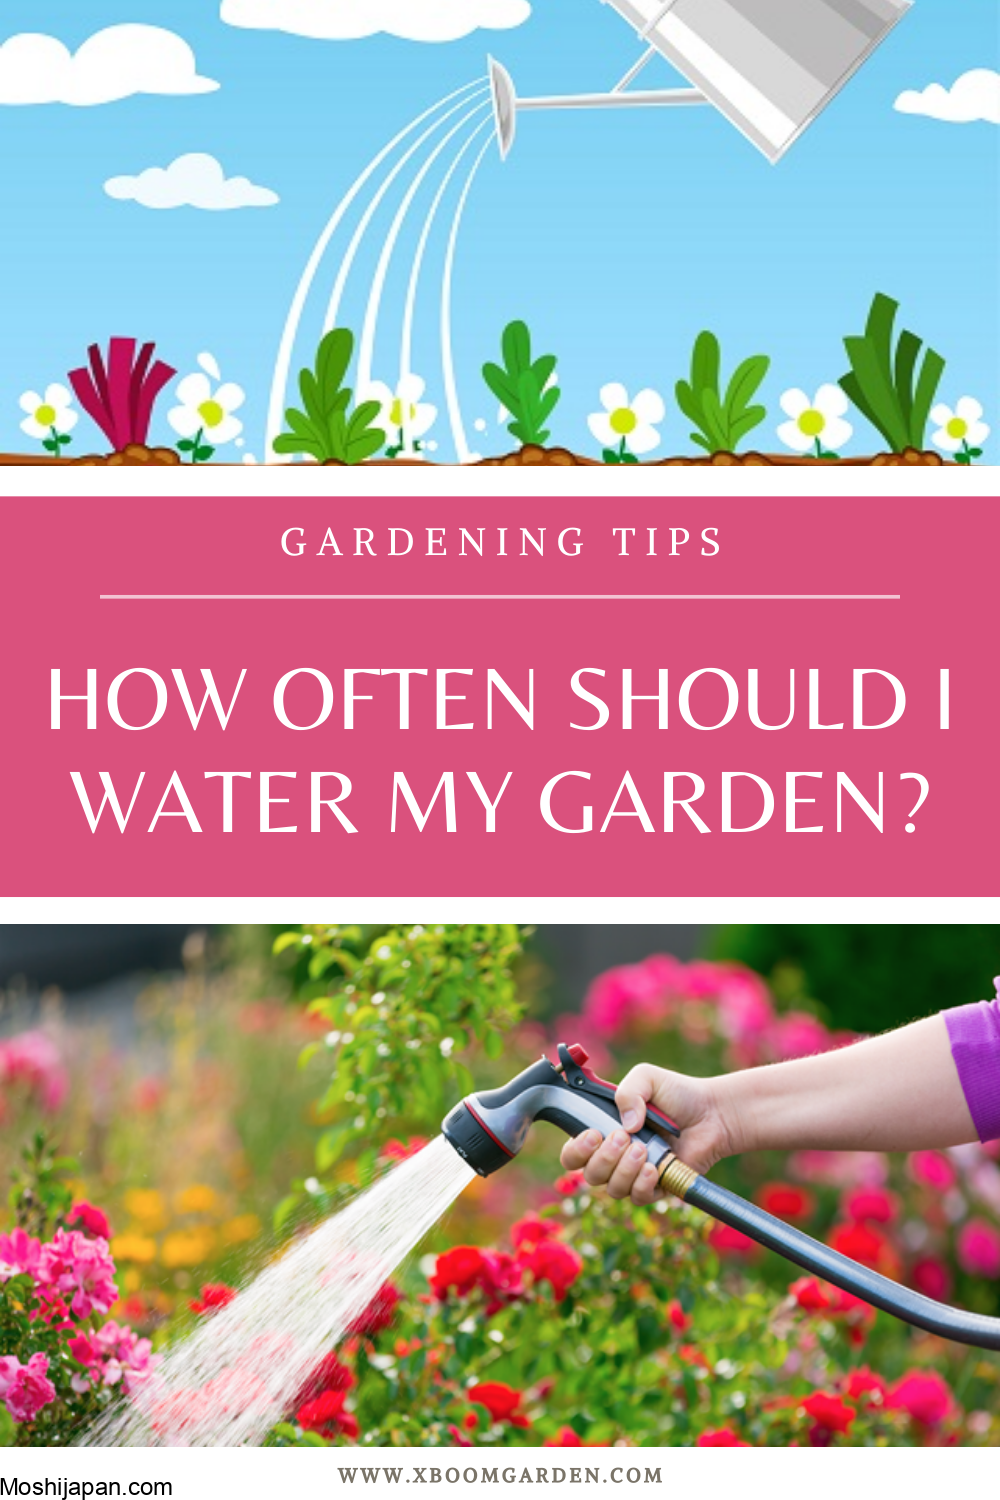 How often should I water my garden? 4